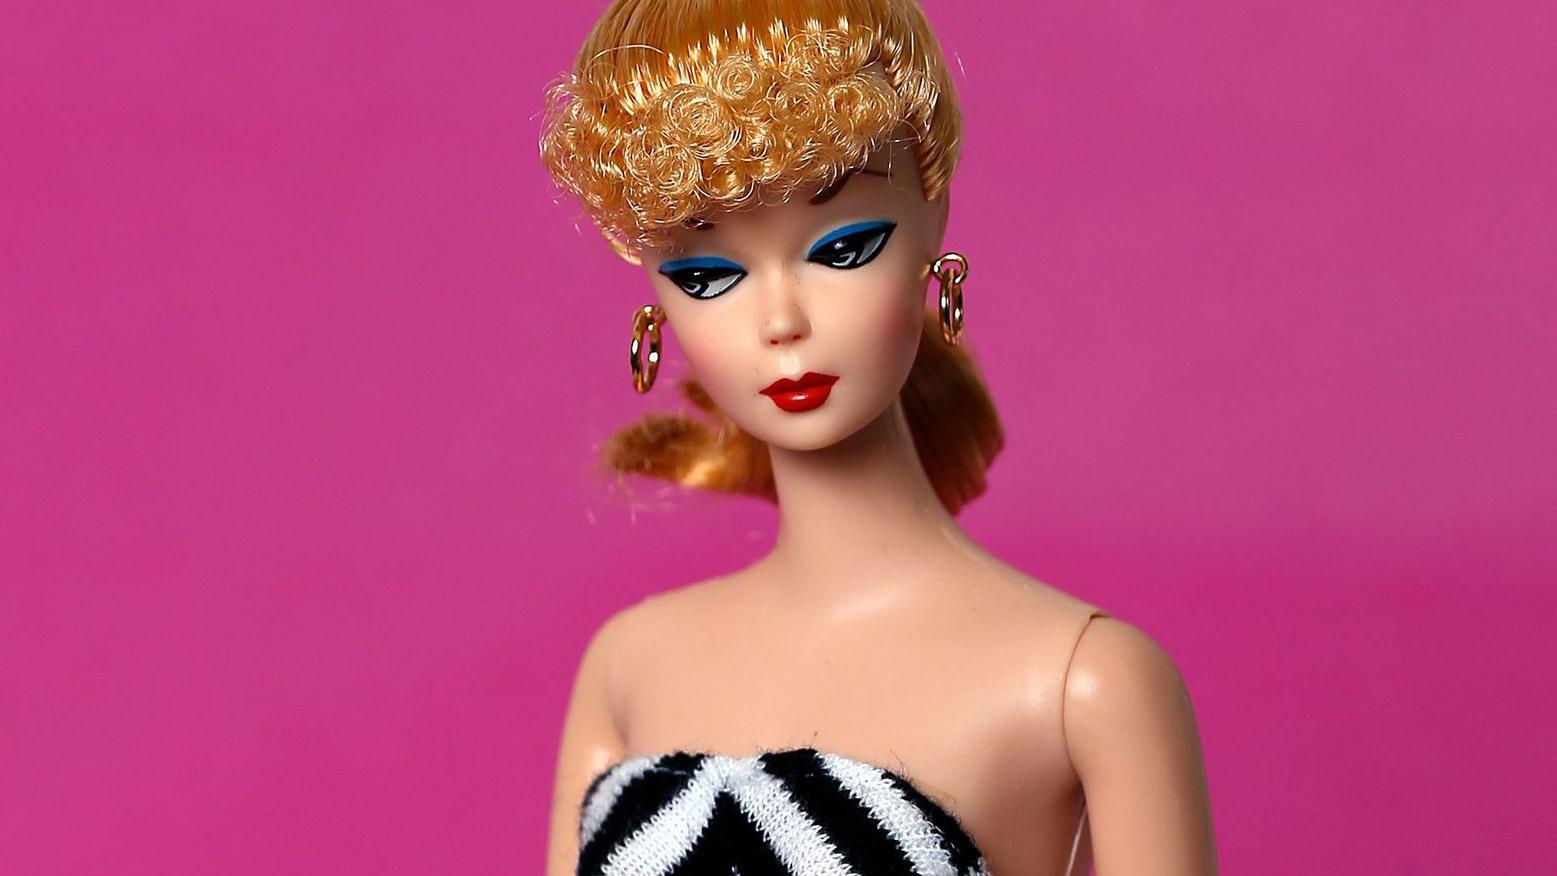 Modelo original de la muñeca Barbie